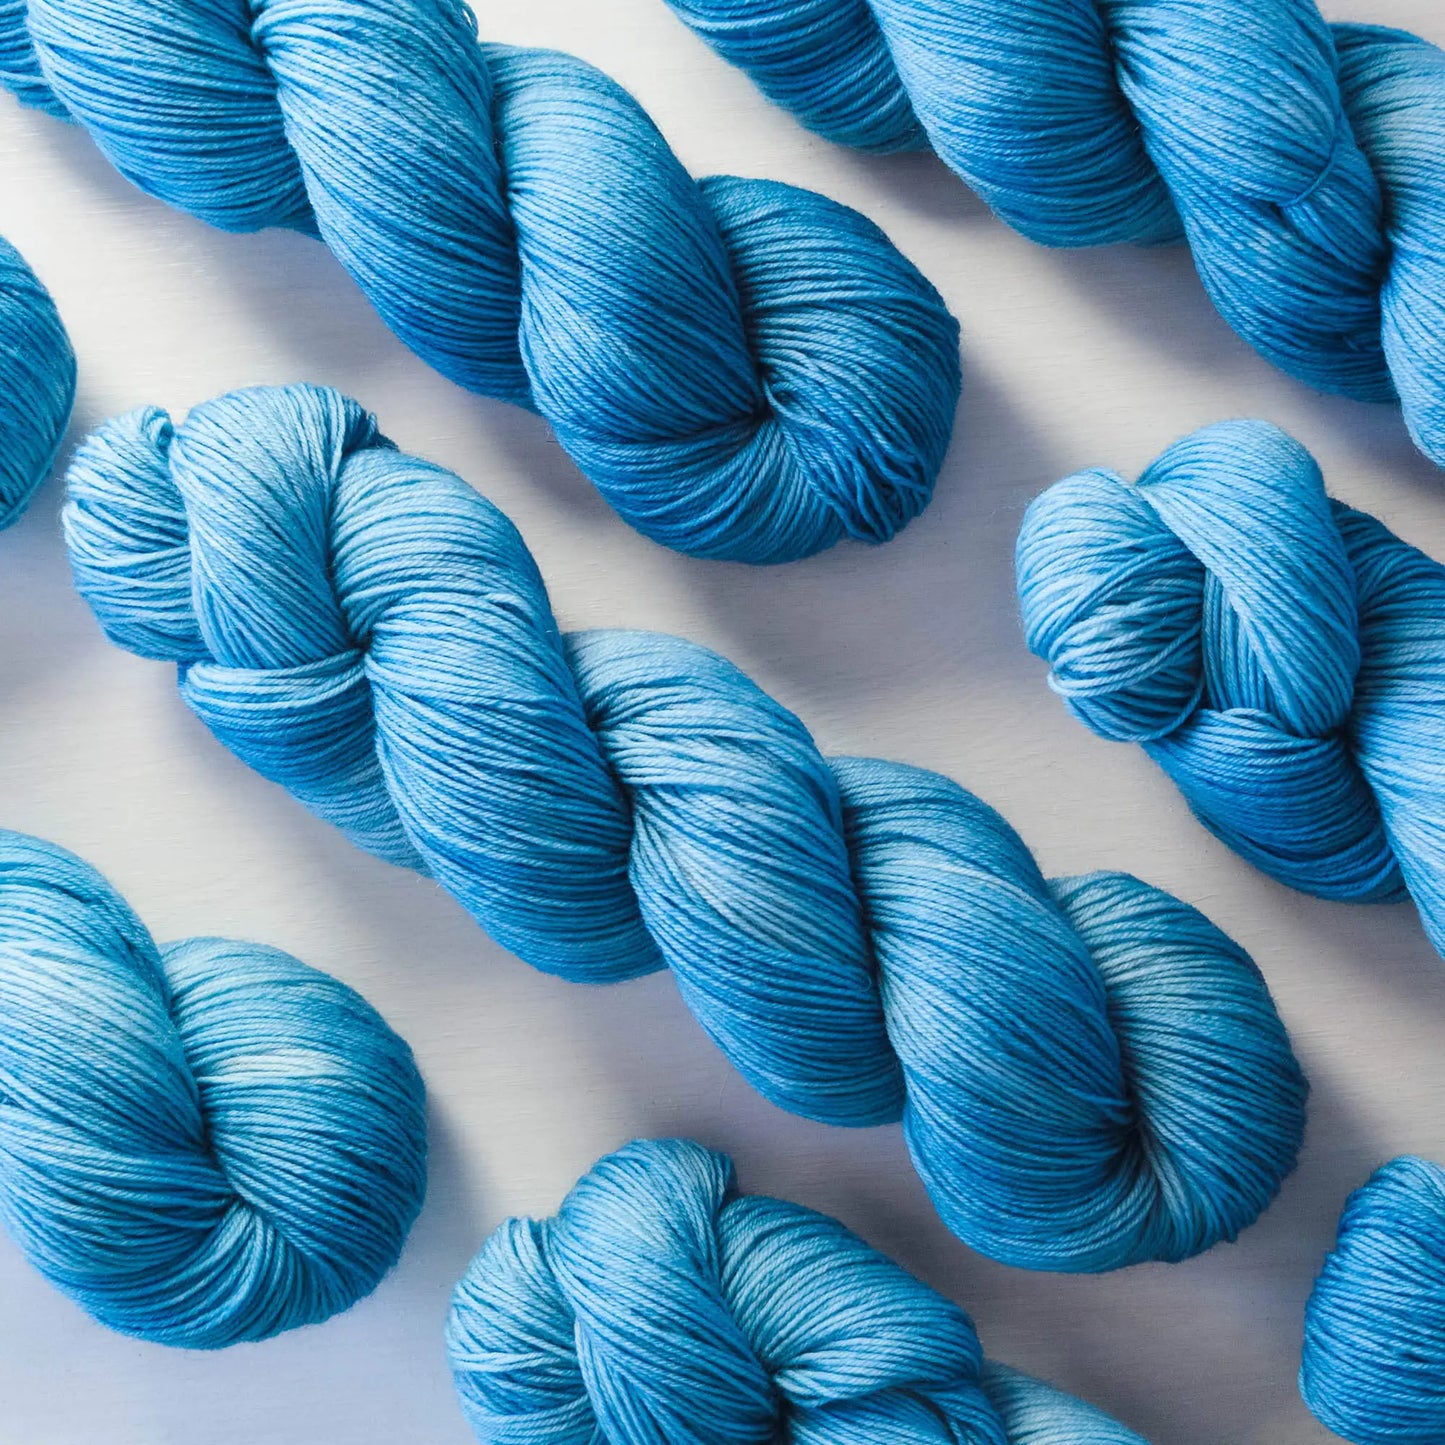 Graublau - Blue Socks (BFL/Nylon)